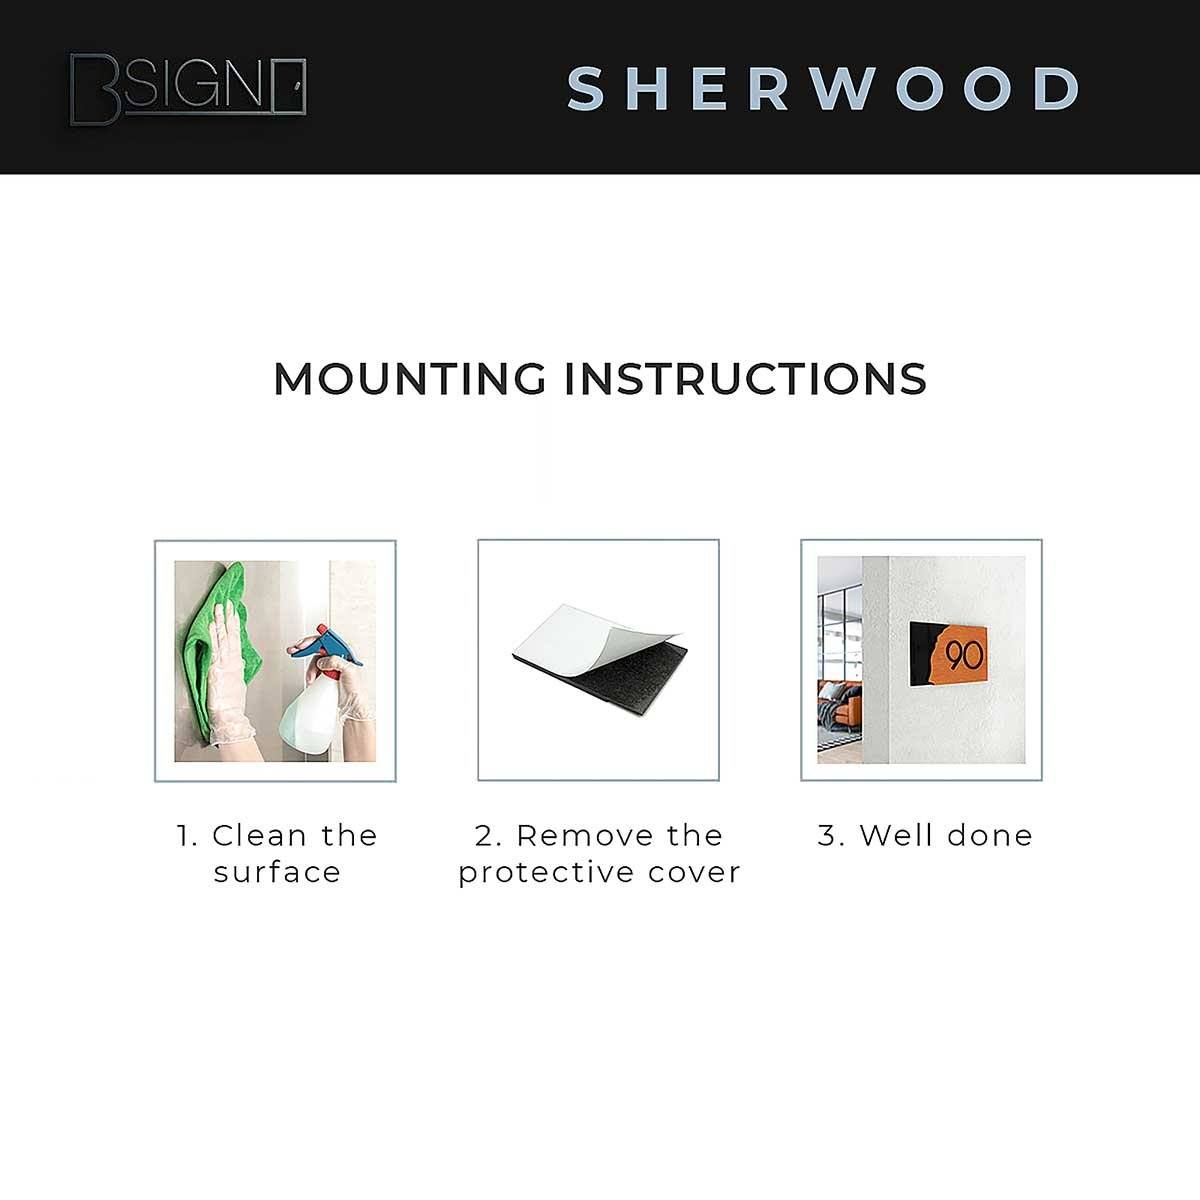 Wooden Signs for Shower Room "Sherwood" Design